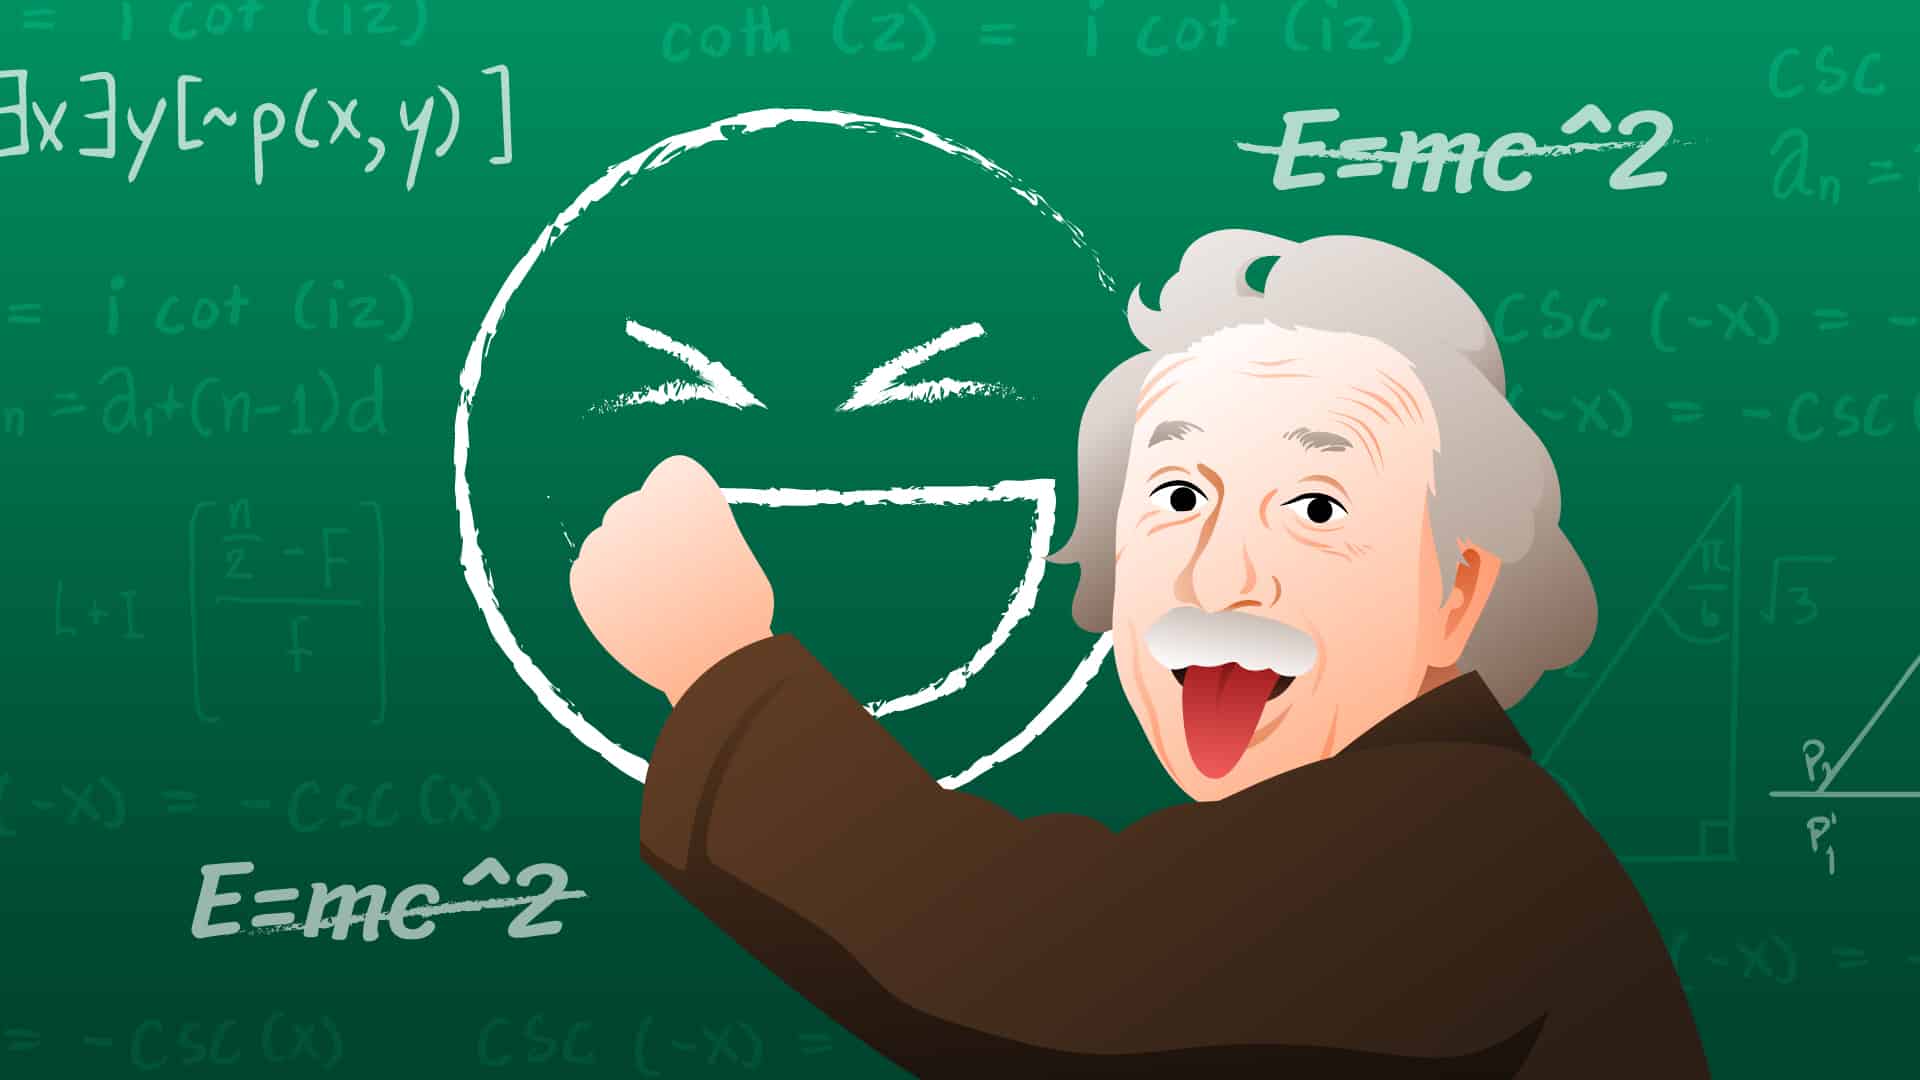 เรียนรู้ “ทฤษฎีแห่งความสุข (Theory Of Happiness)” ที่ไม่ใช่สูตร E=Mc^2  ของไอน์สไตน์ - Mission To The Moon Media